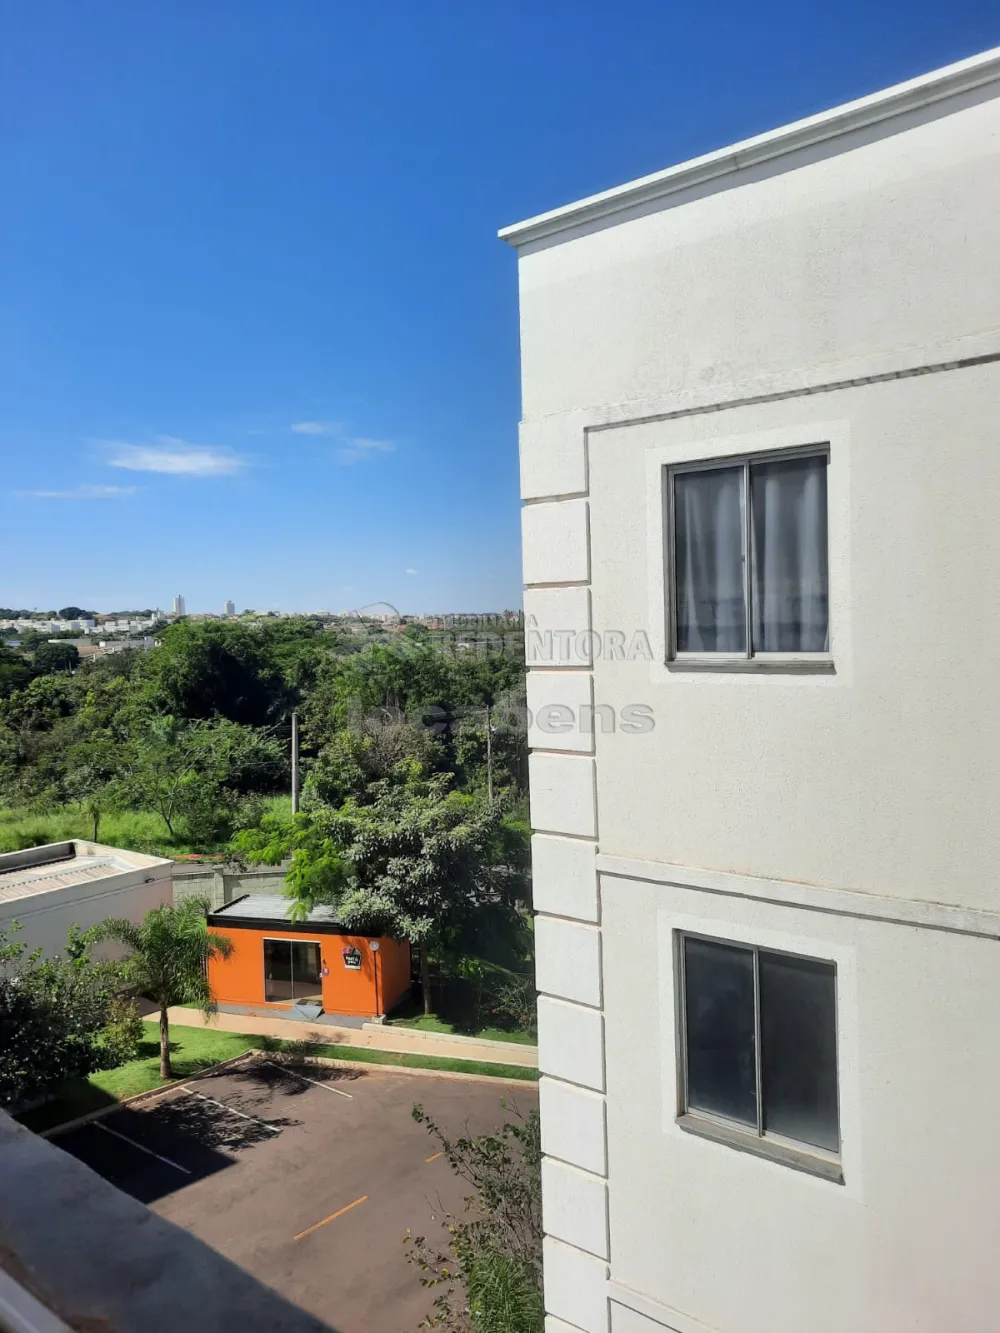 Alugar Apartamento / Padrão em São José do Rio Preto R$ 850,00 - Foto 9